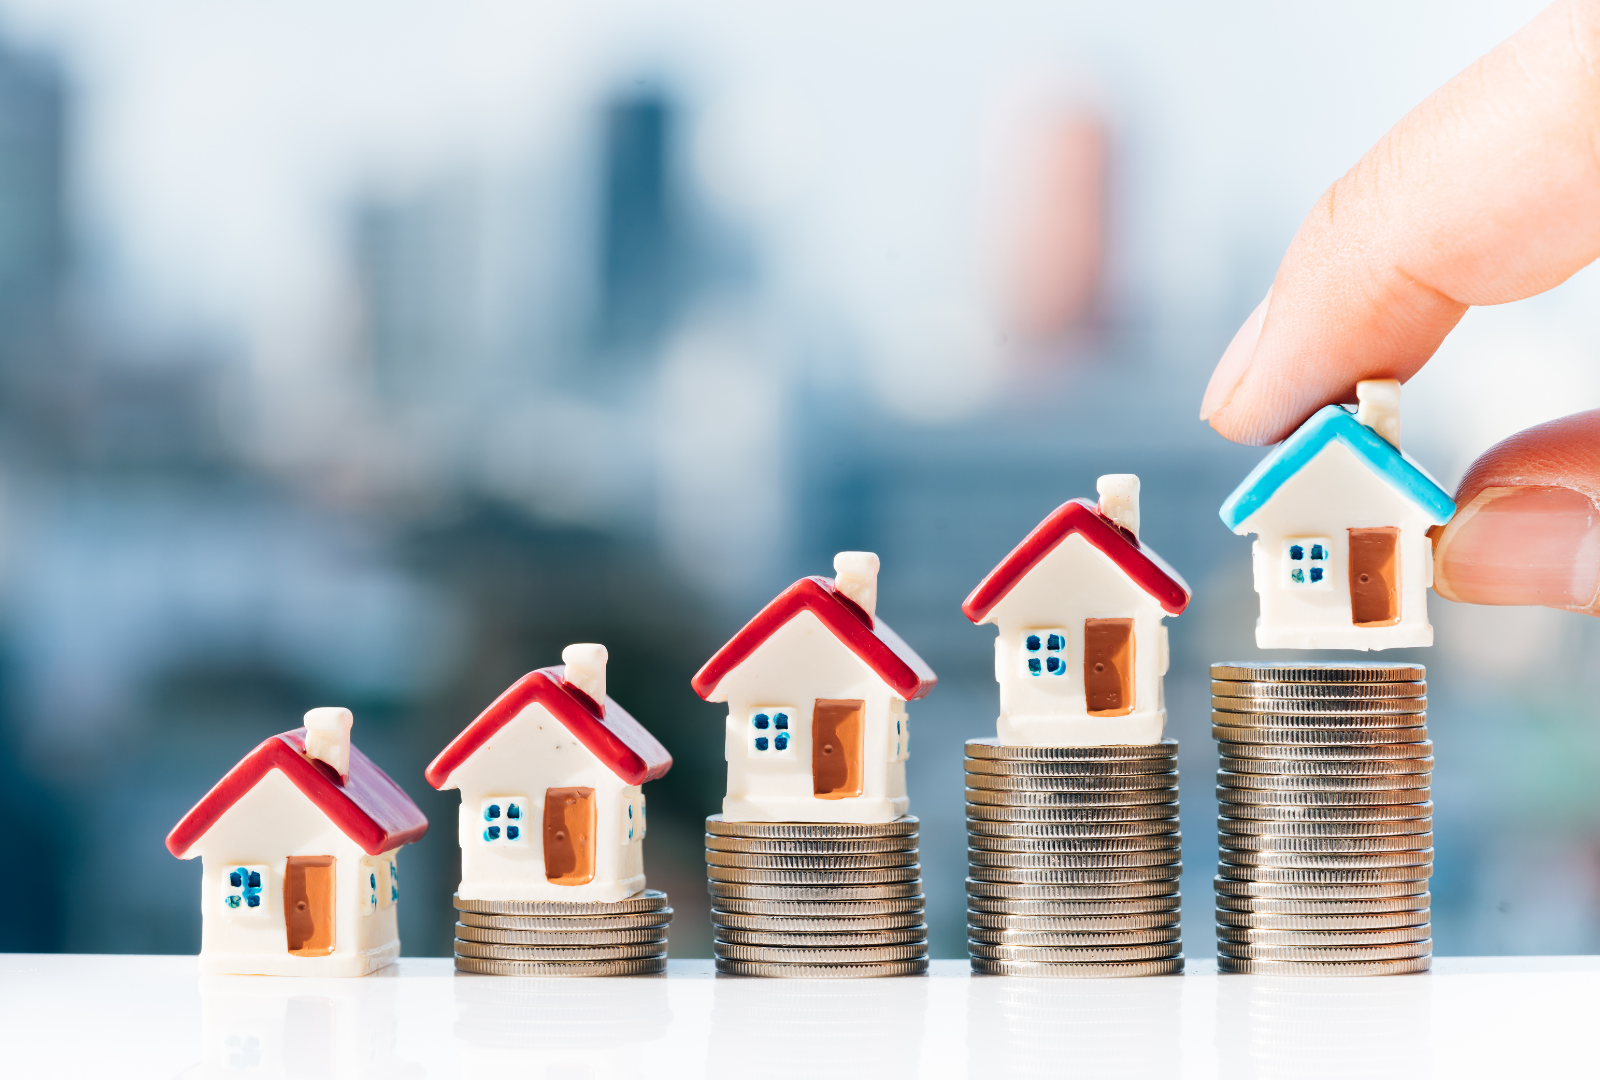 התשלום שמתלווה למכירת הנכס: כל מה שצריך לדעת על מס שבח